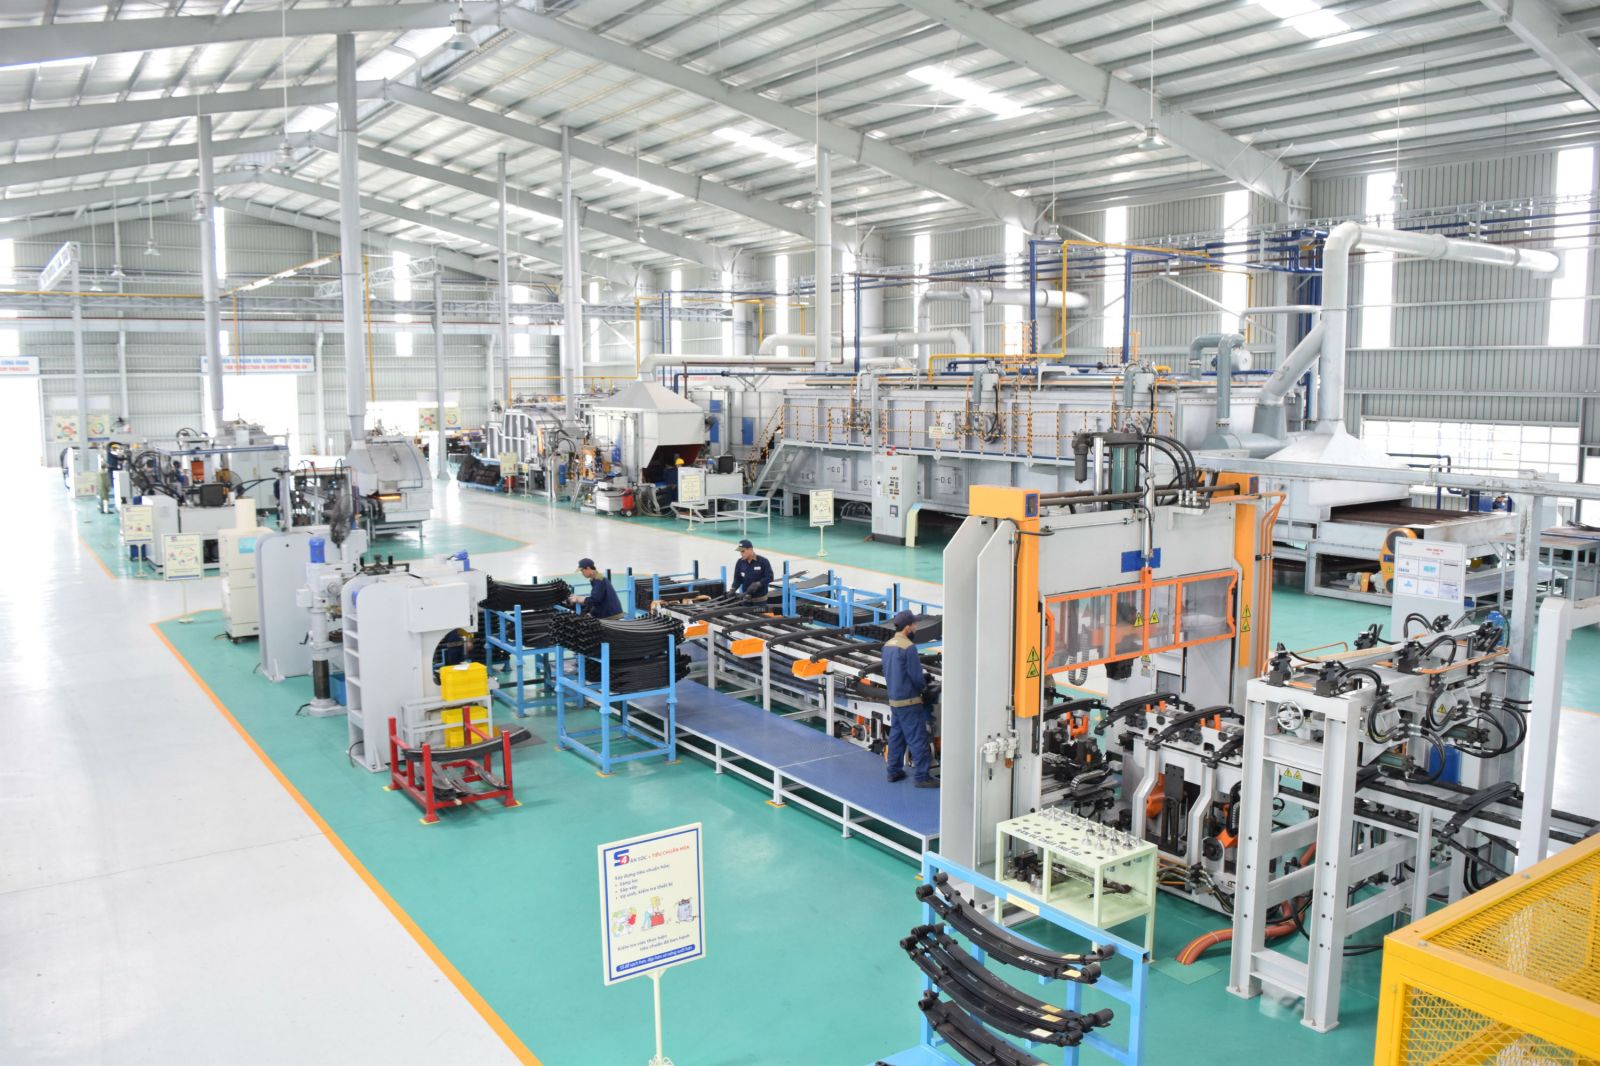 Dây chuyền sản xuất tại Nhà máy Nhíp với tỷ lệ tự động hóa trên 70%